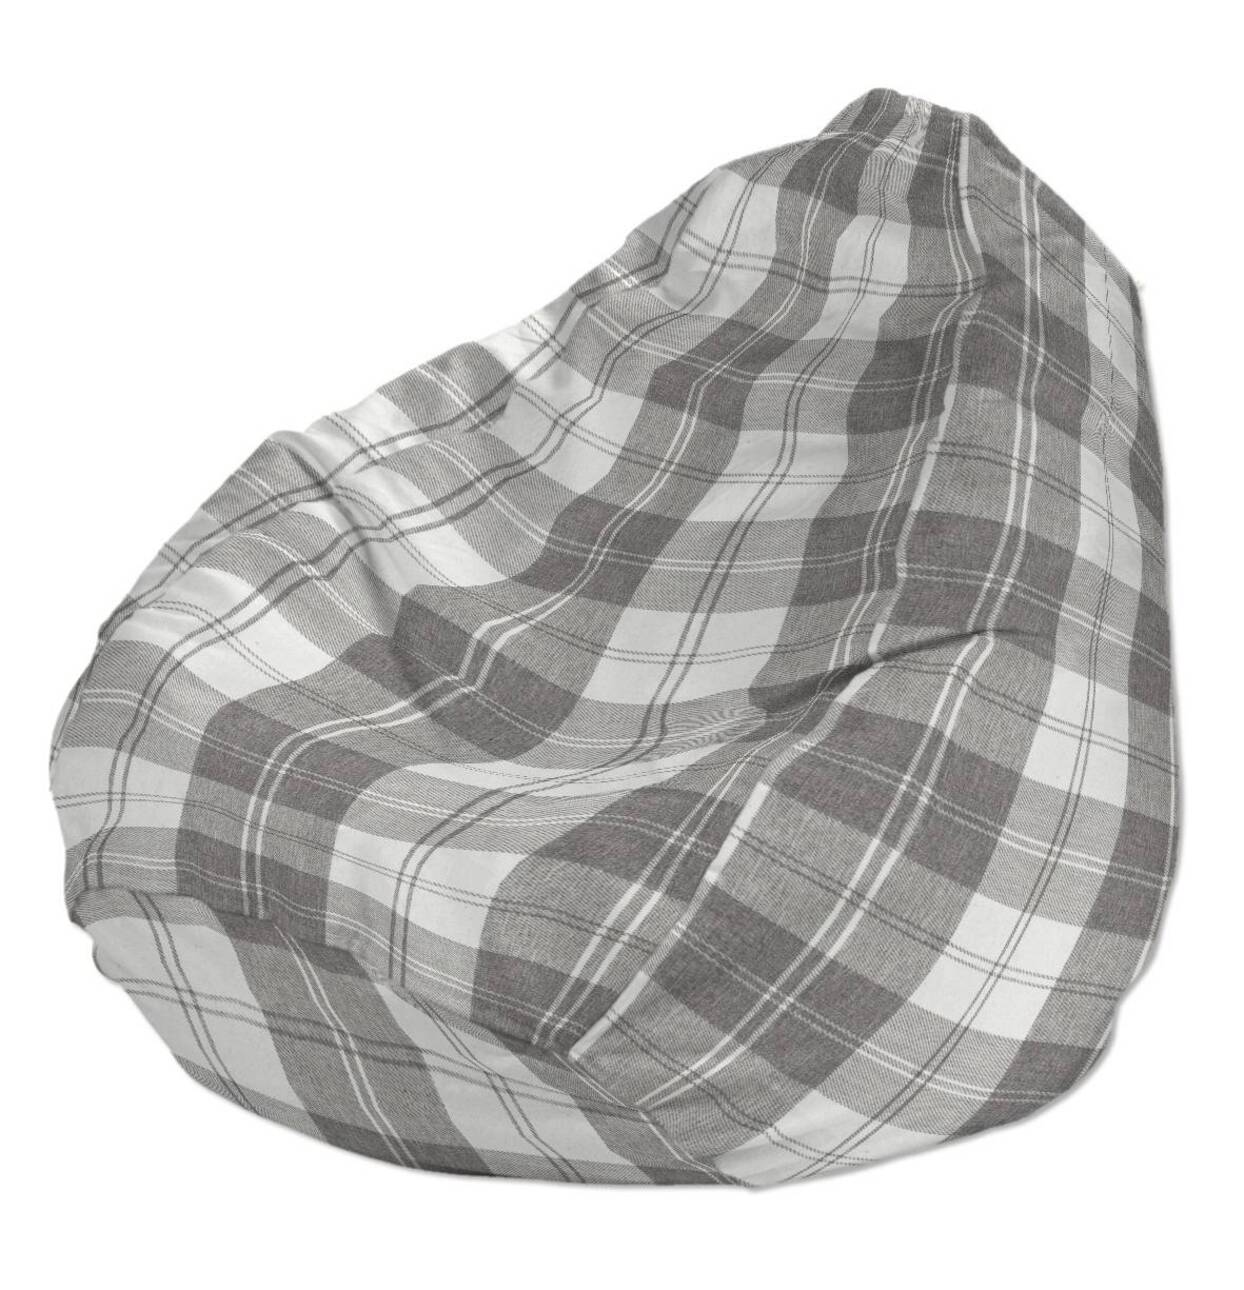 Bezug für Sitzsack, weiß-grau , Bezug für Sitzsack Ø80 x 115 cm, Edinburgh günstig online kaufen